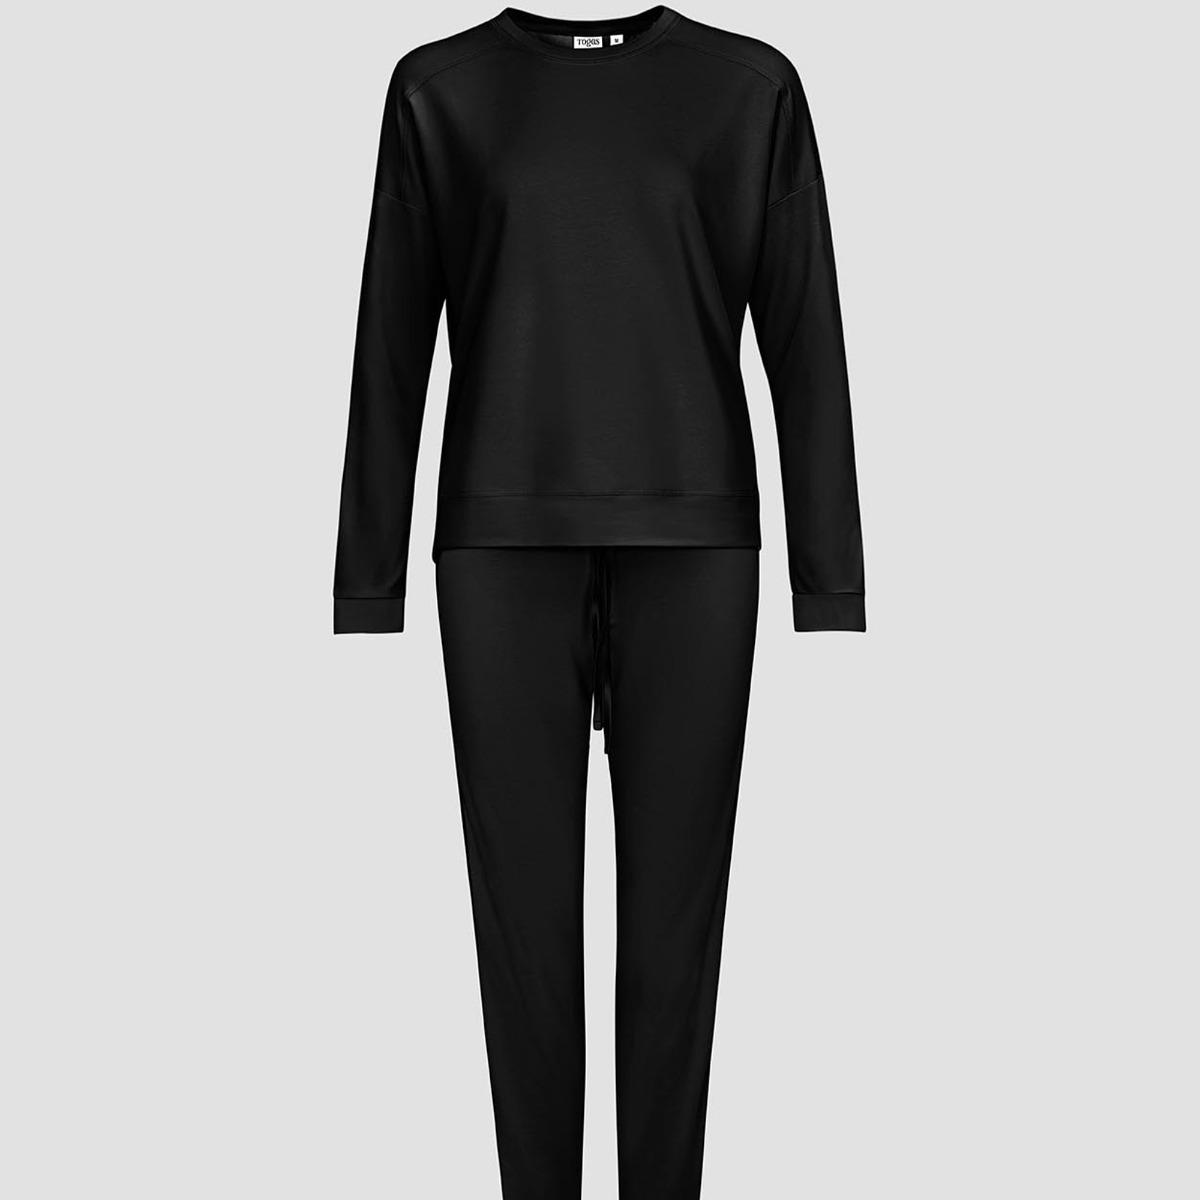 Женская пижама Togas Рене чёрная XL (50), цвет чёрный, размер 50 - фото 1